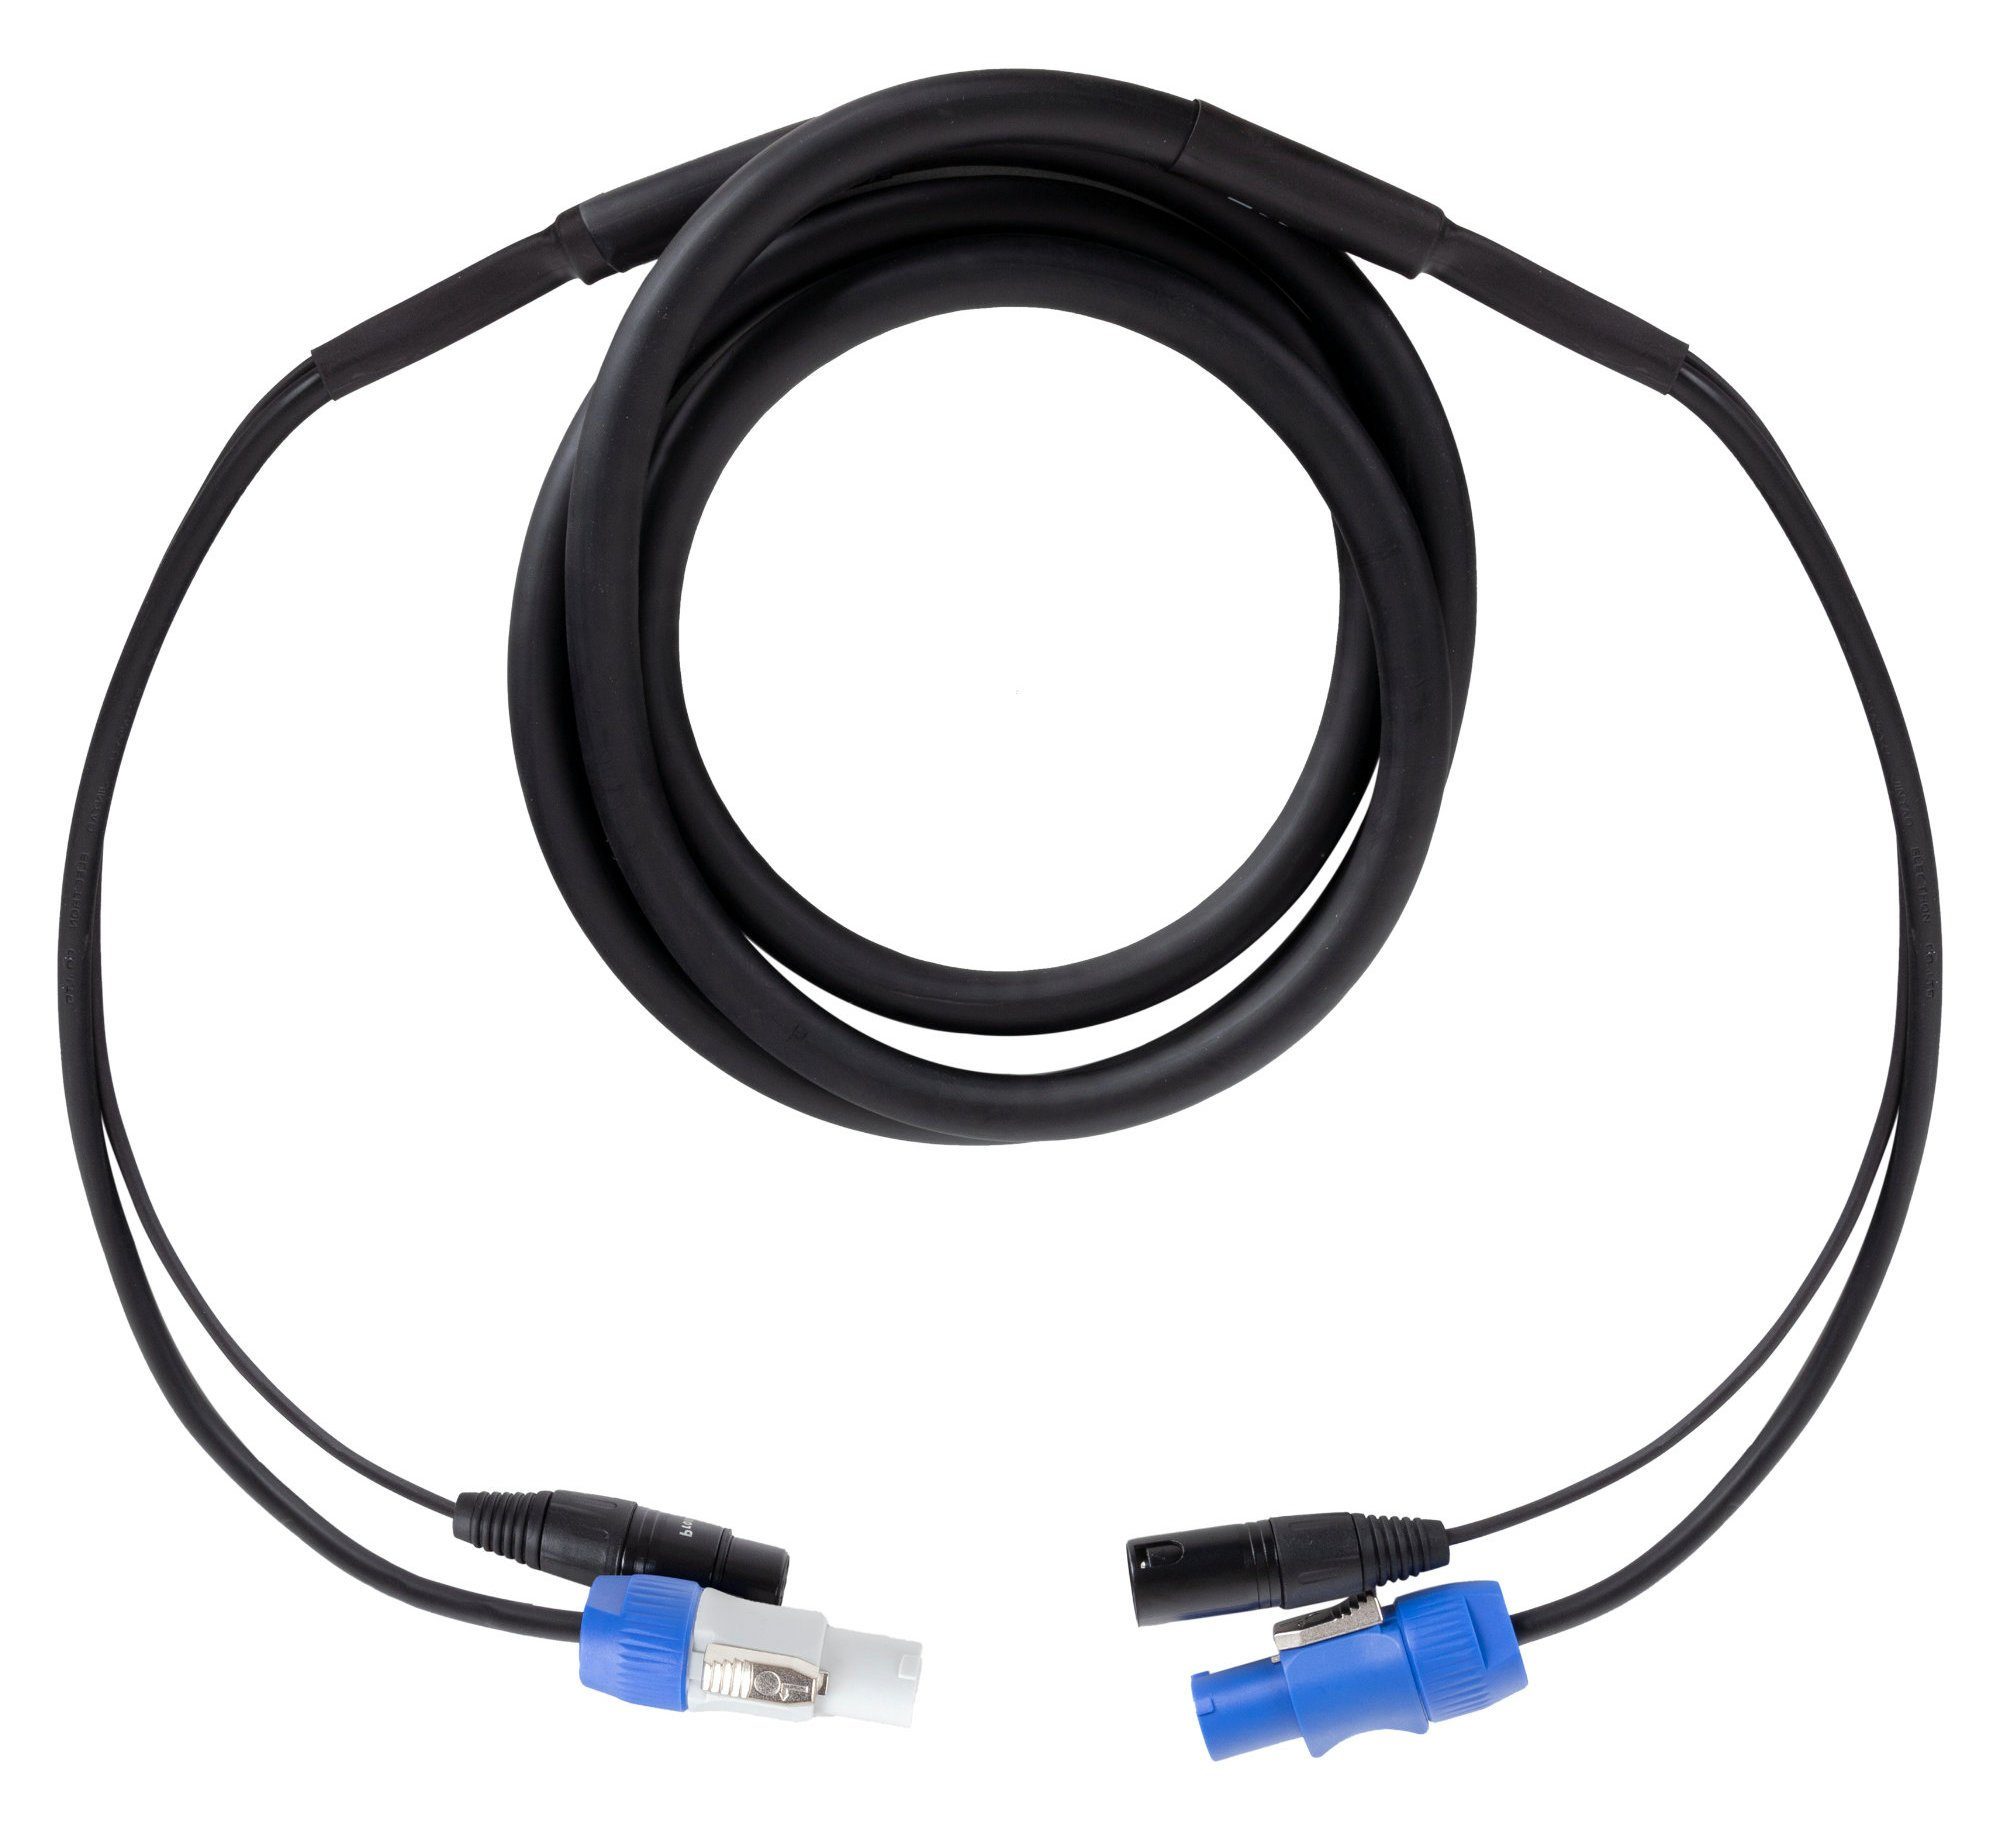 Pronomic Stage PPX Hybridkabel Powerplug Audio-Kabel, Powercon, XLR (250 cm), Kombi-Kabel für Stromversorgung und Audiosignal